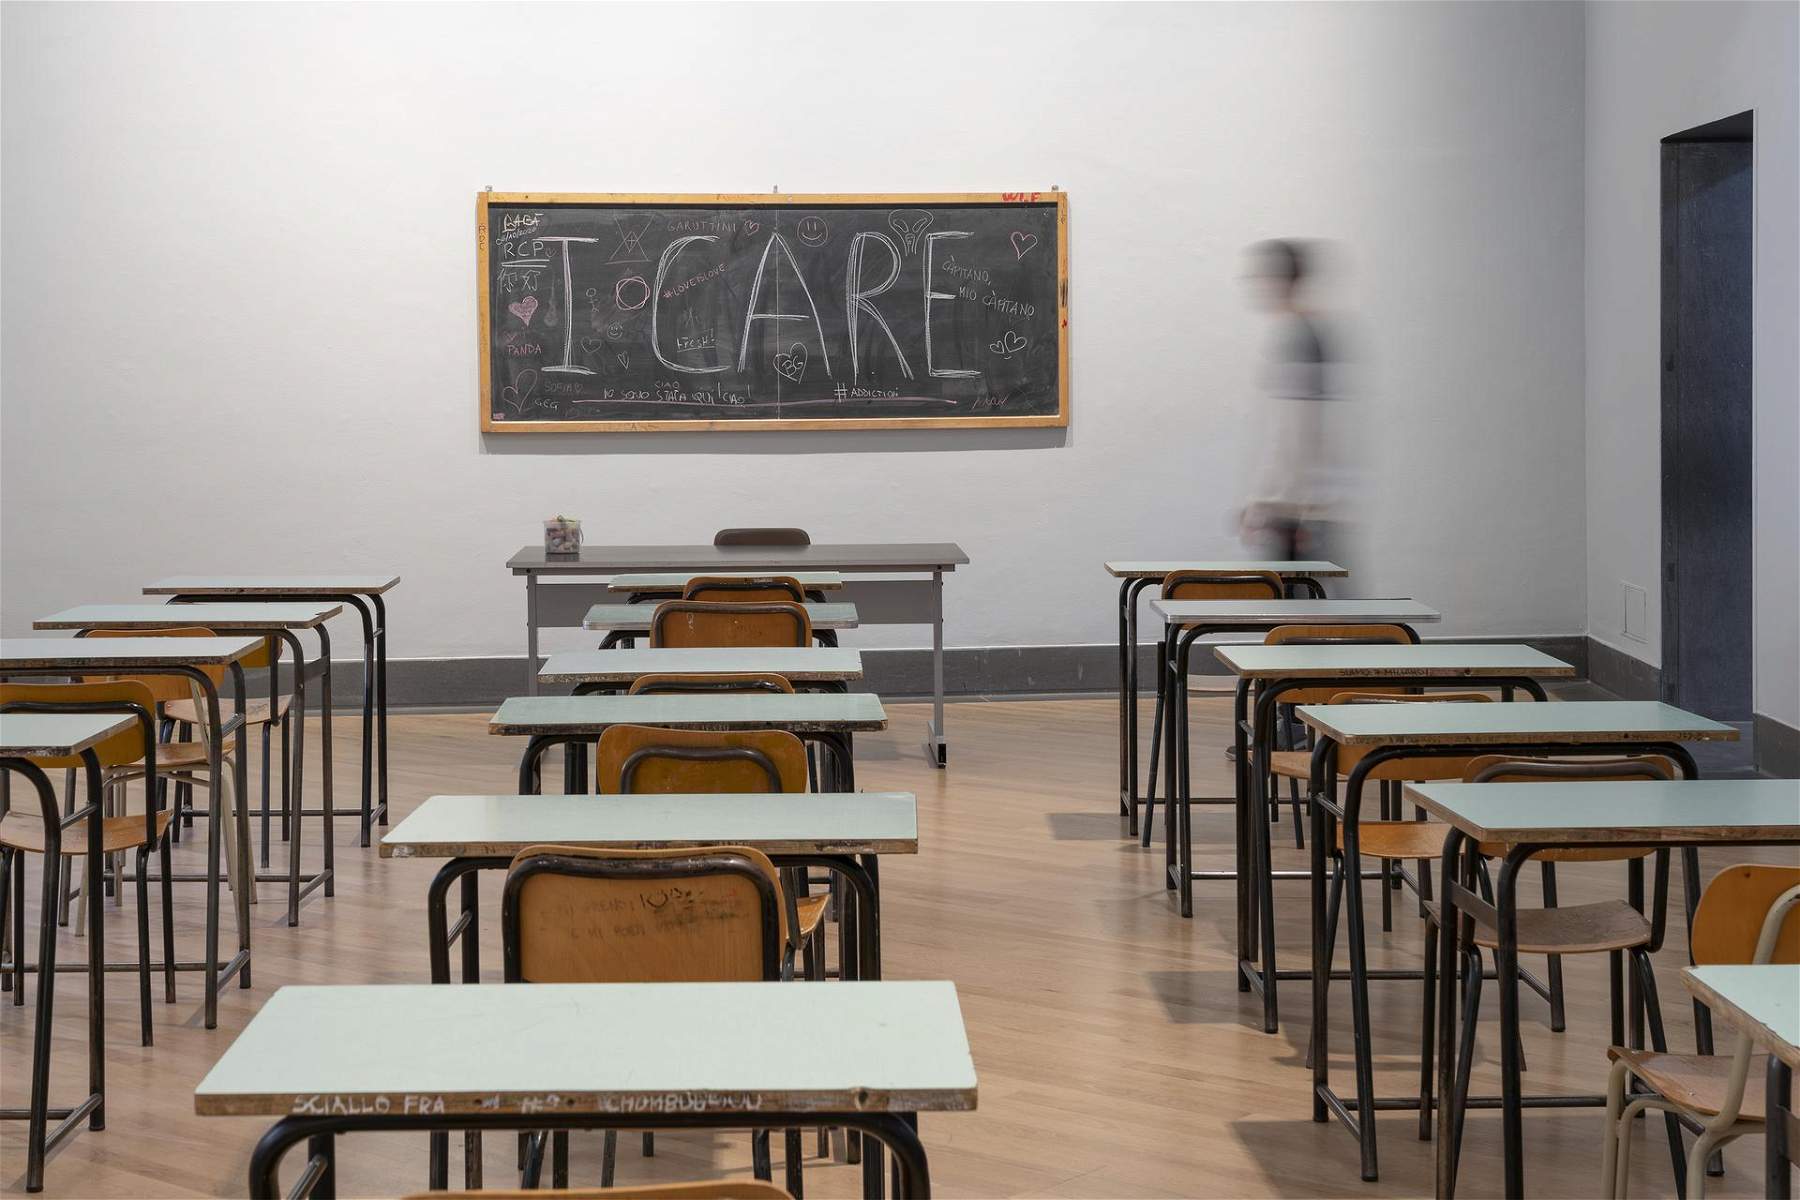 Ottima idea della GAMeC di Bergamo: un corso online di educazione civica e arte